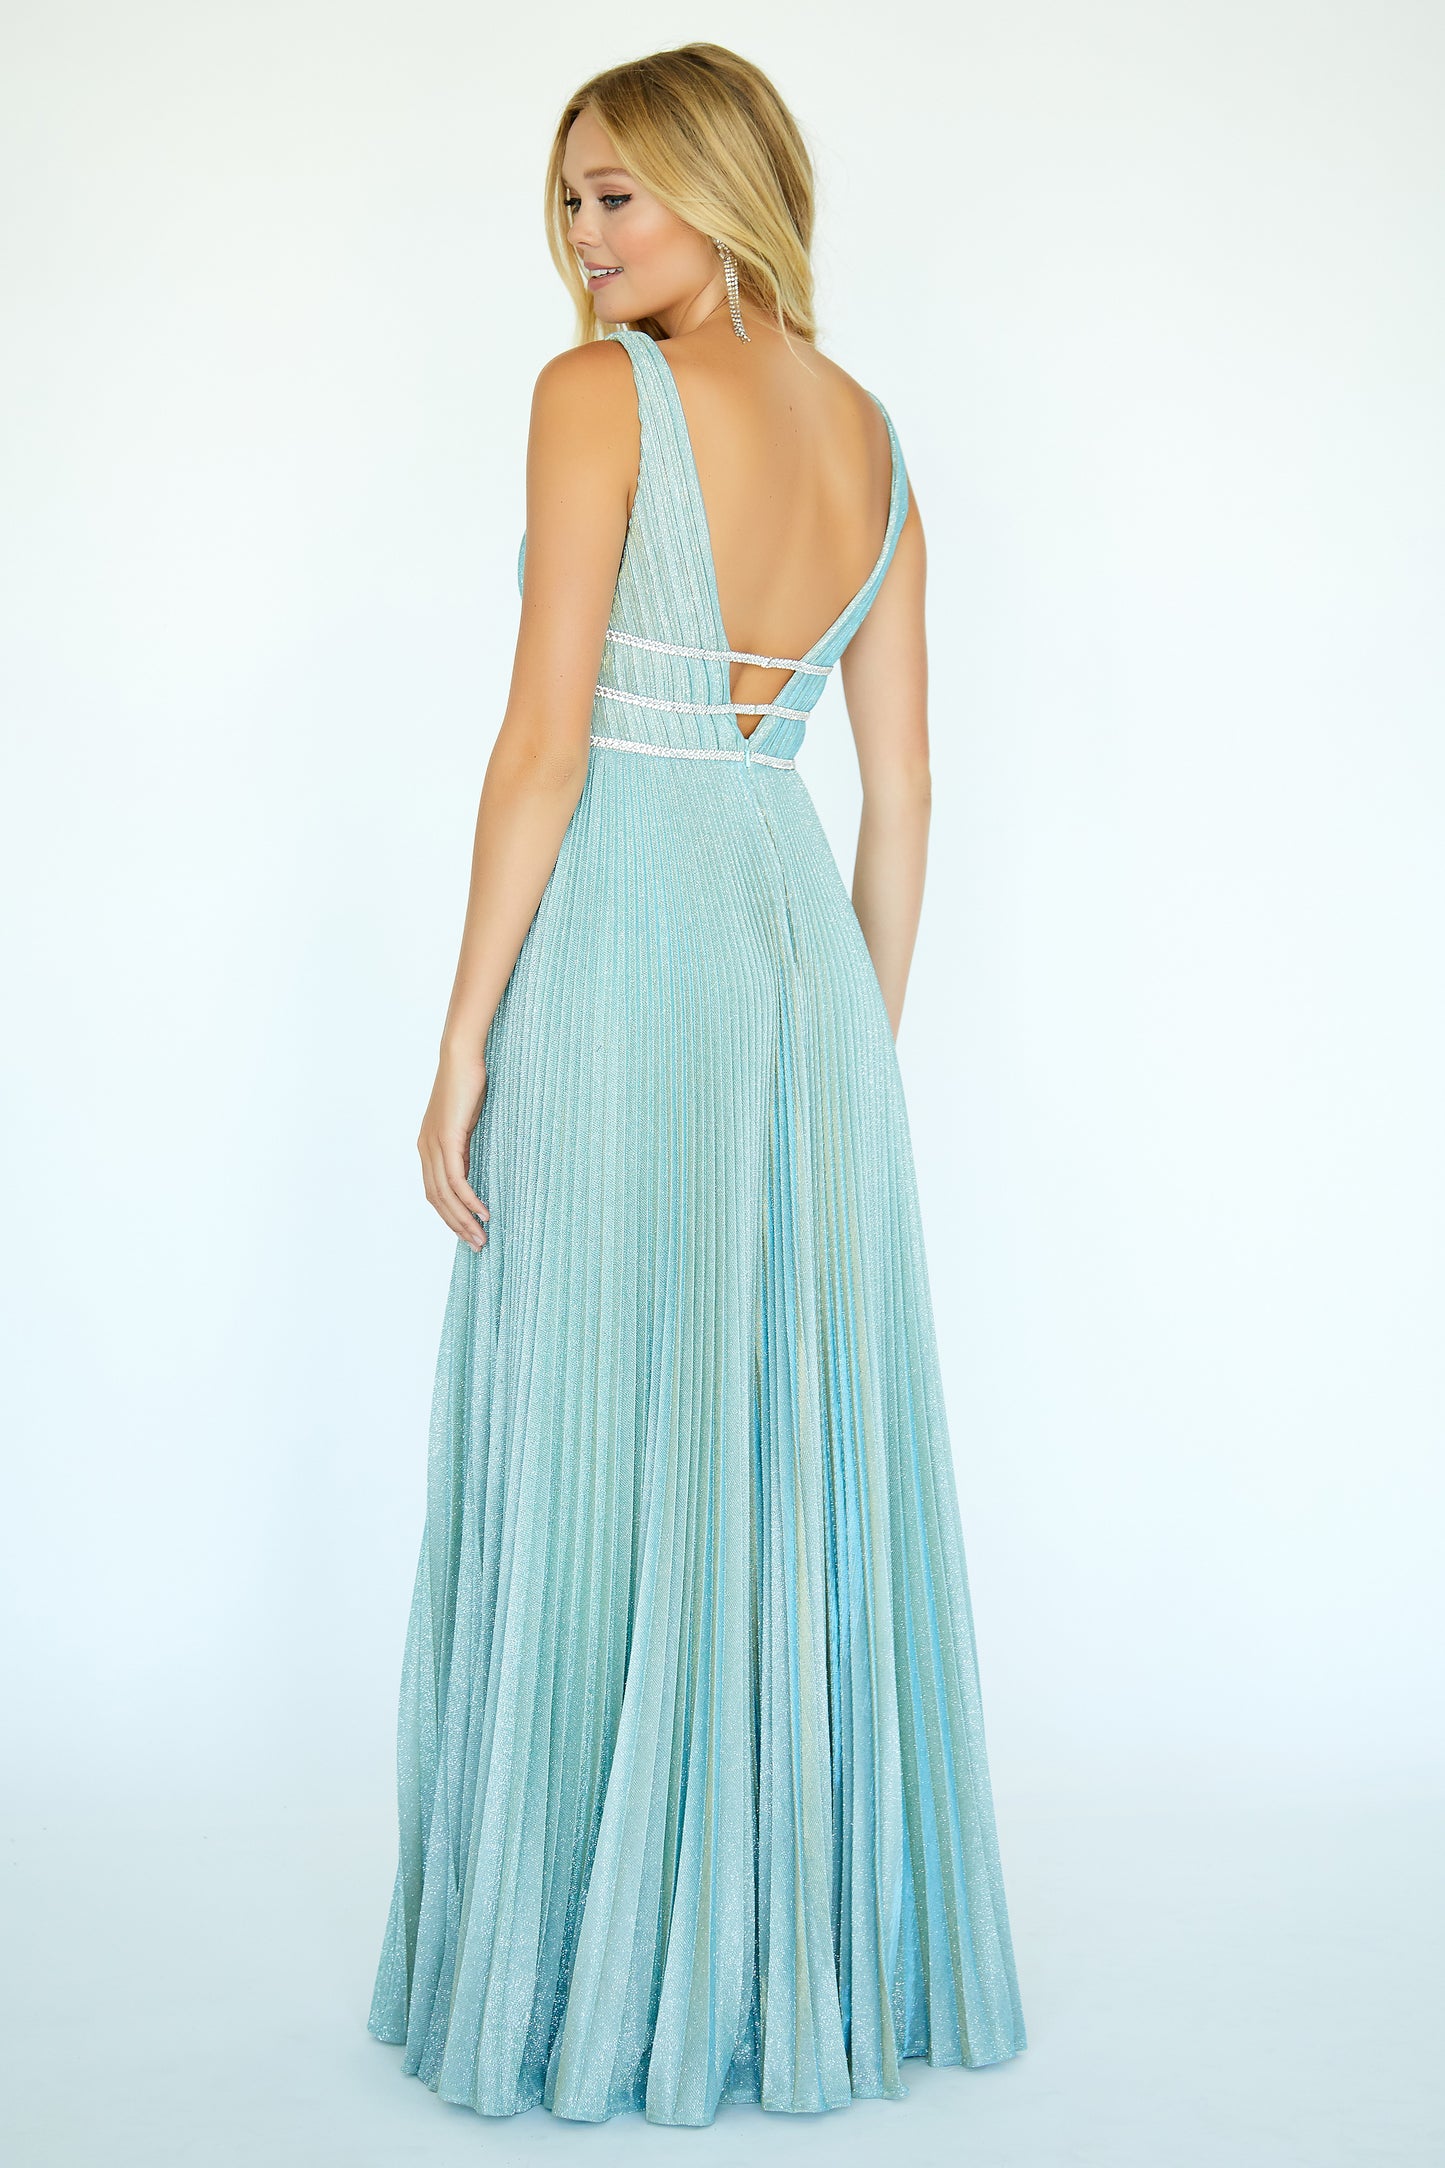 Jolene 20005 Size 12 Long Pleated Iridescent Glitter Prom Dress Formal Gown V Neck